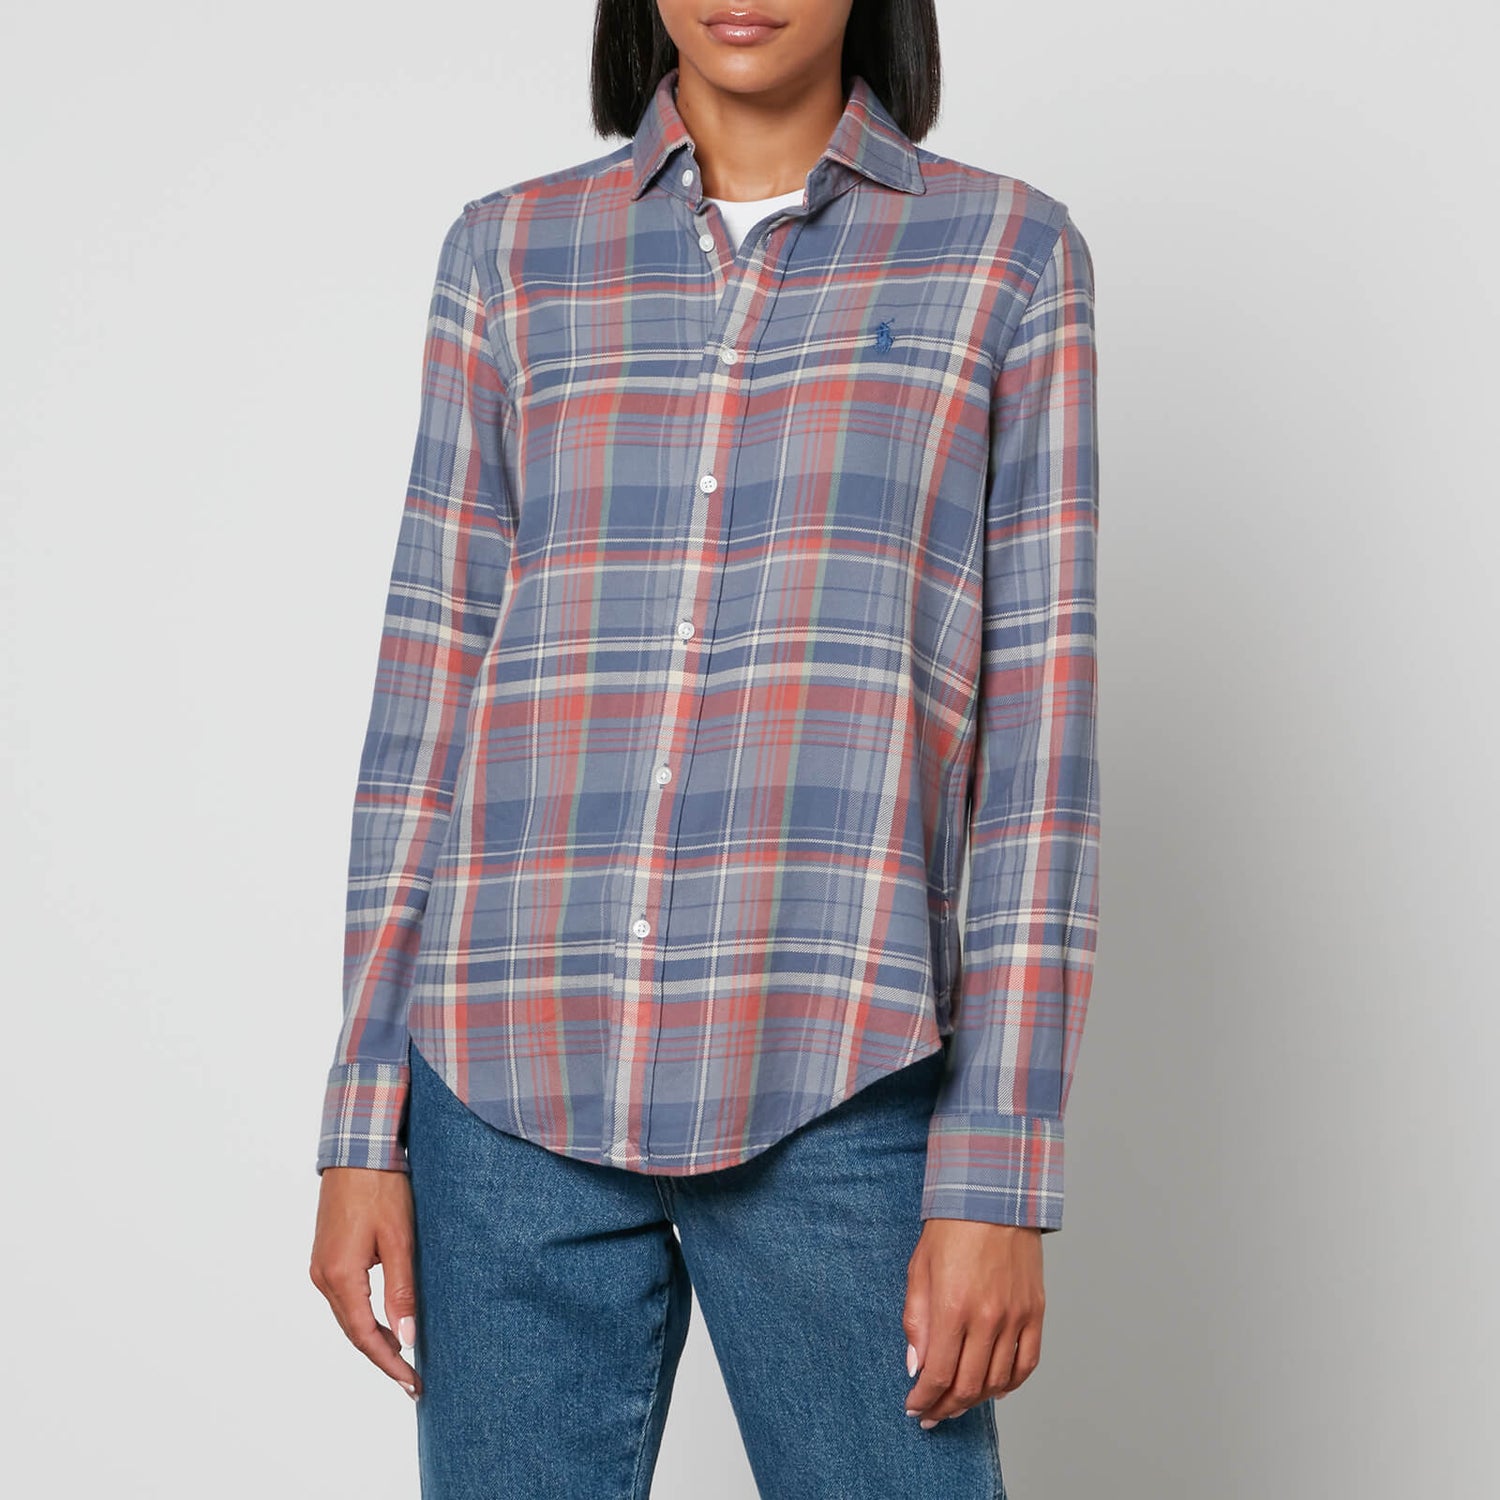 Polo Ralph Lauren Georgia Plaid Flannel Shirt - XS